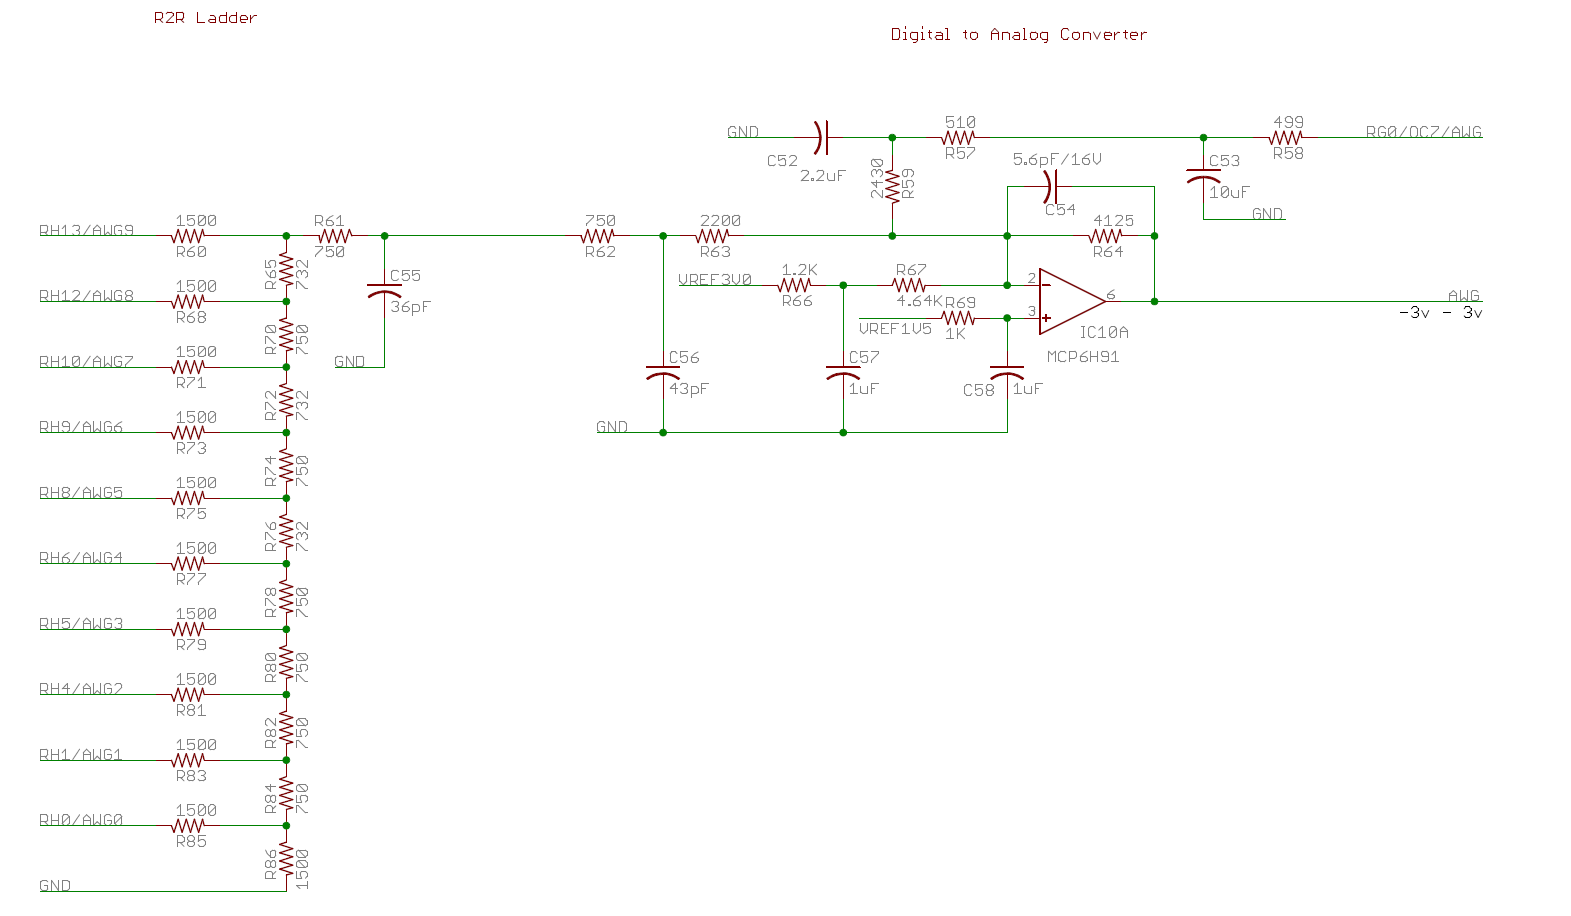 Function Generator schematic